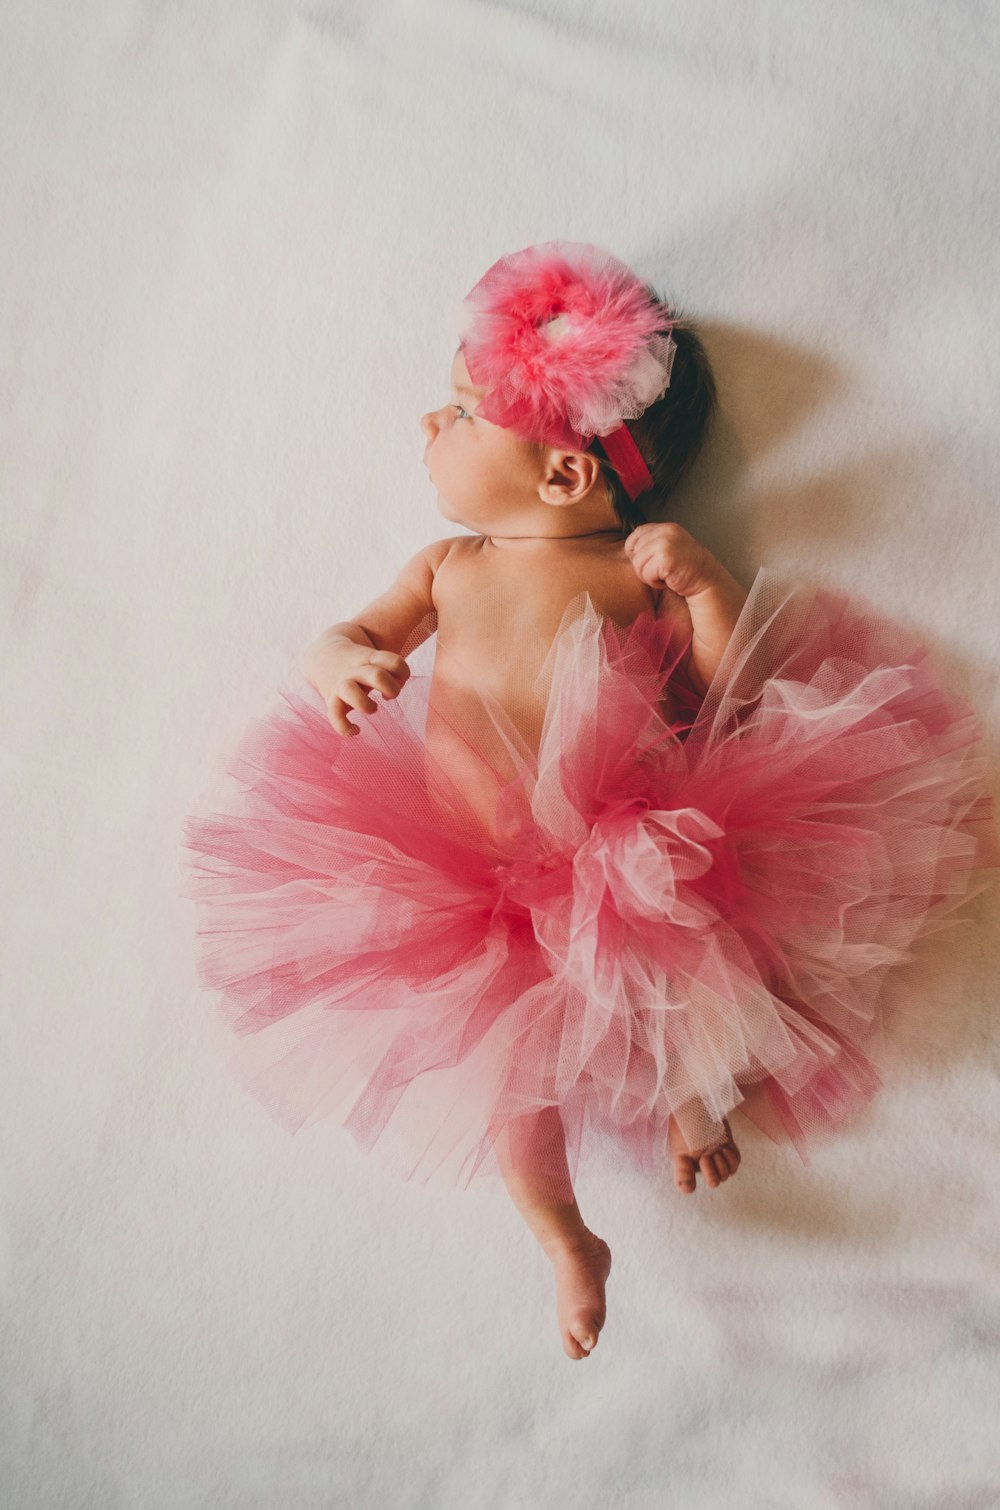 Baby wearing pink tutu dress. 